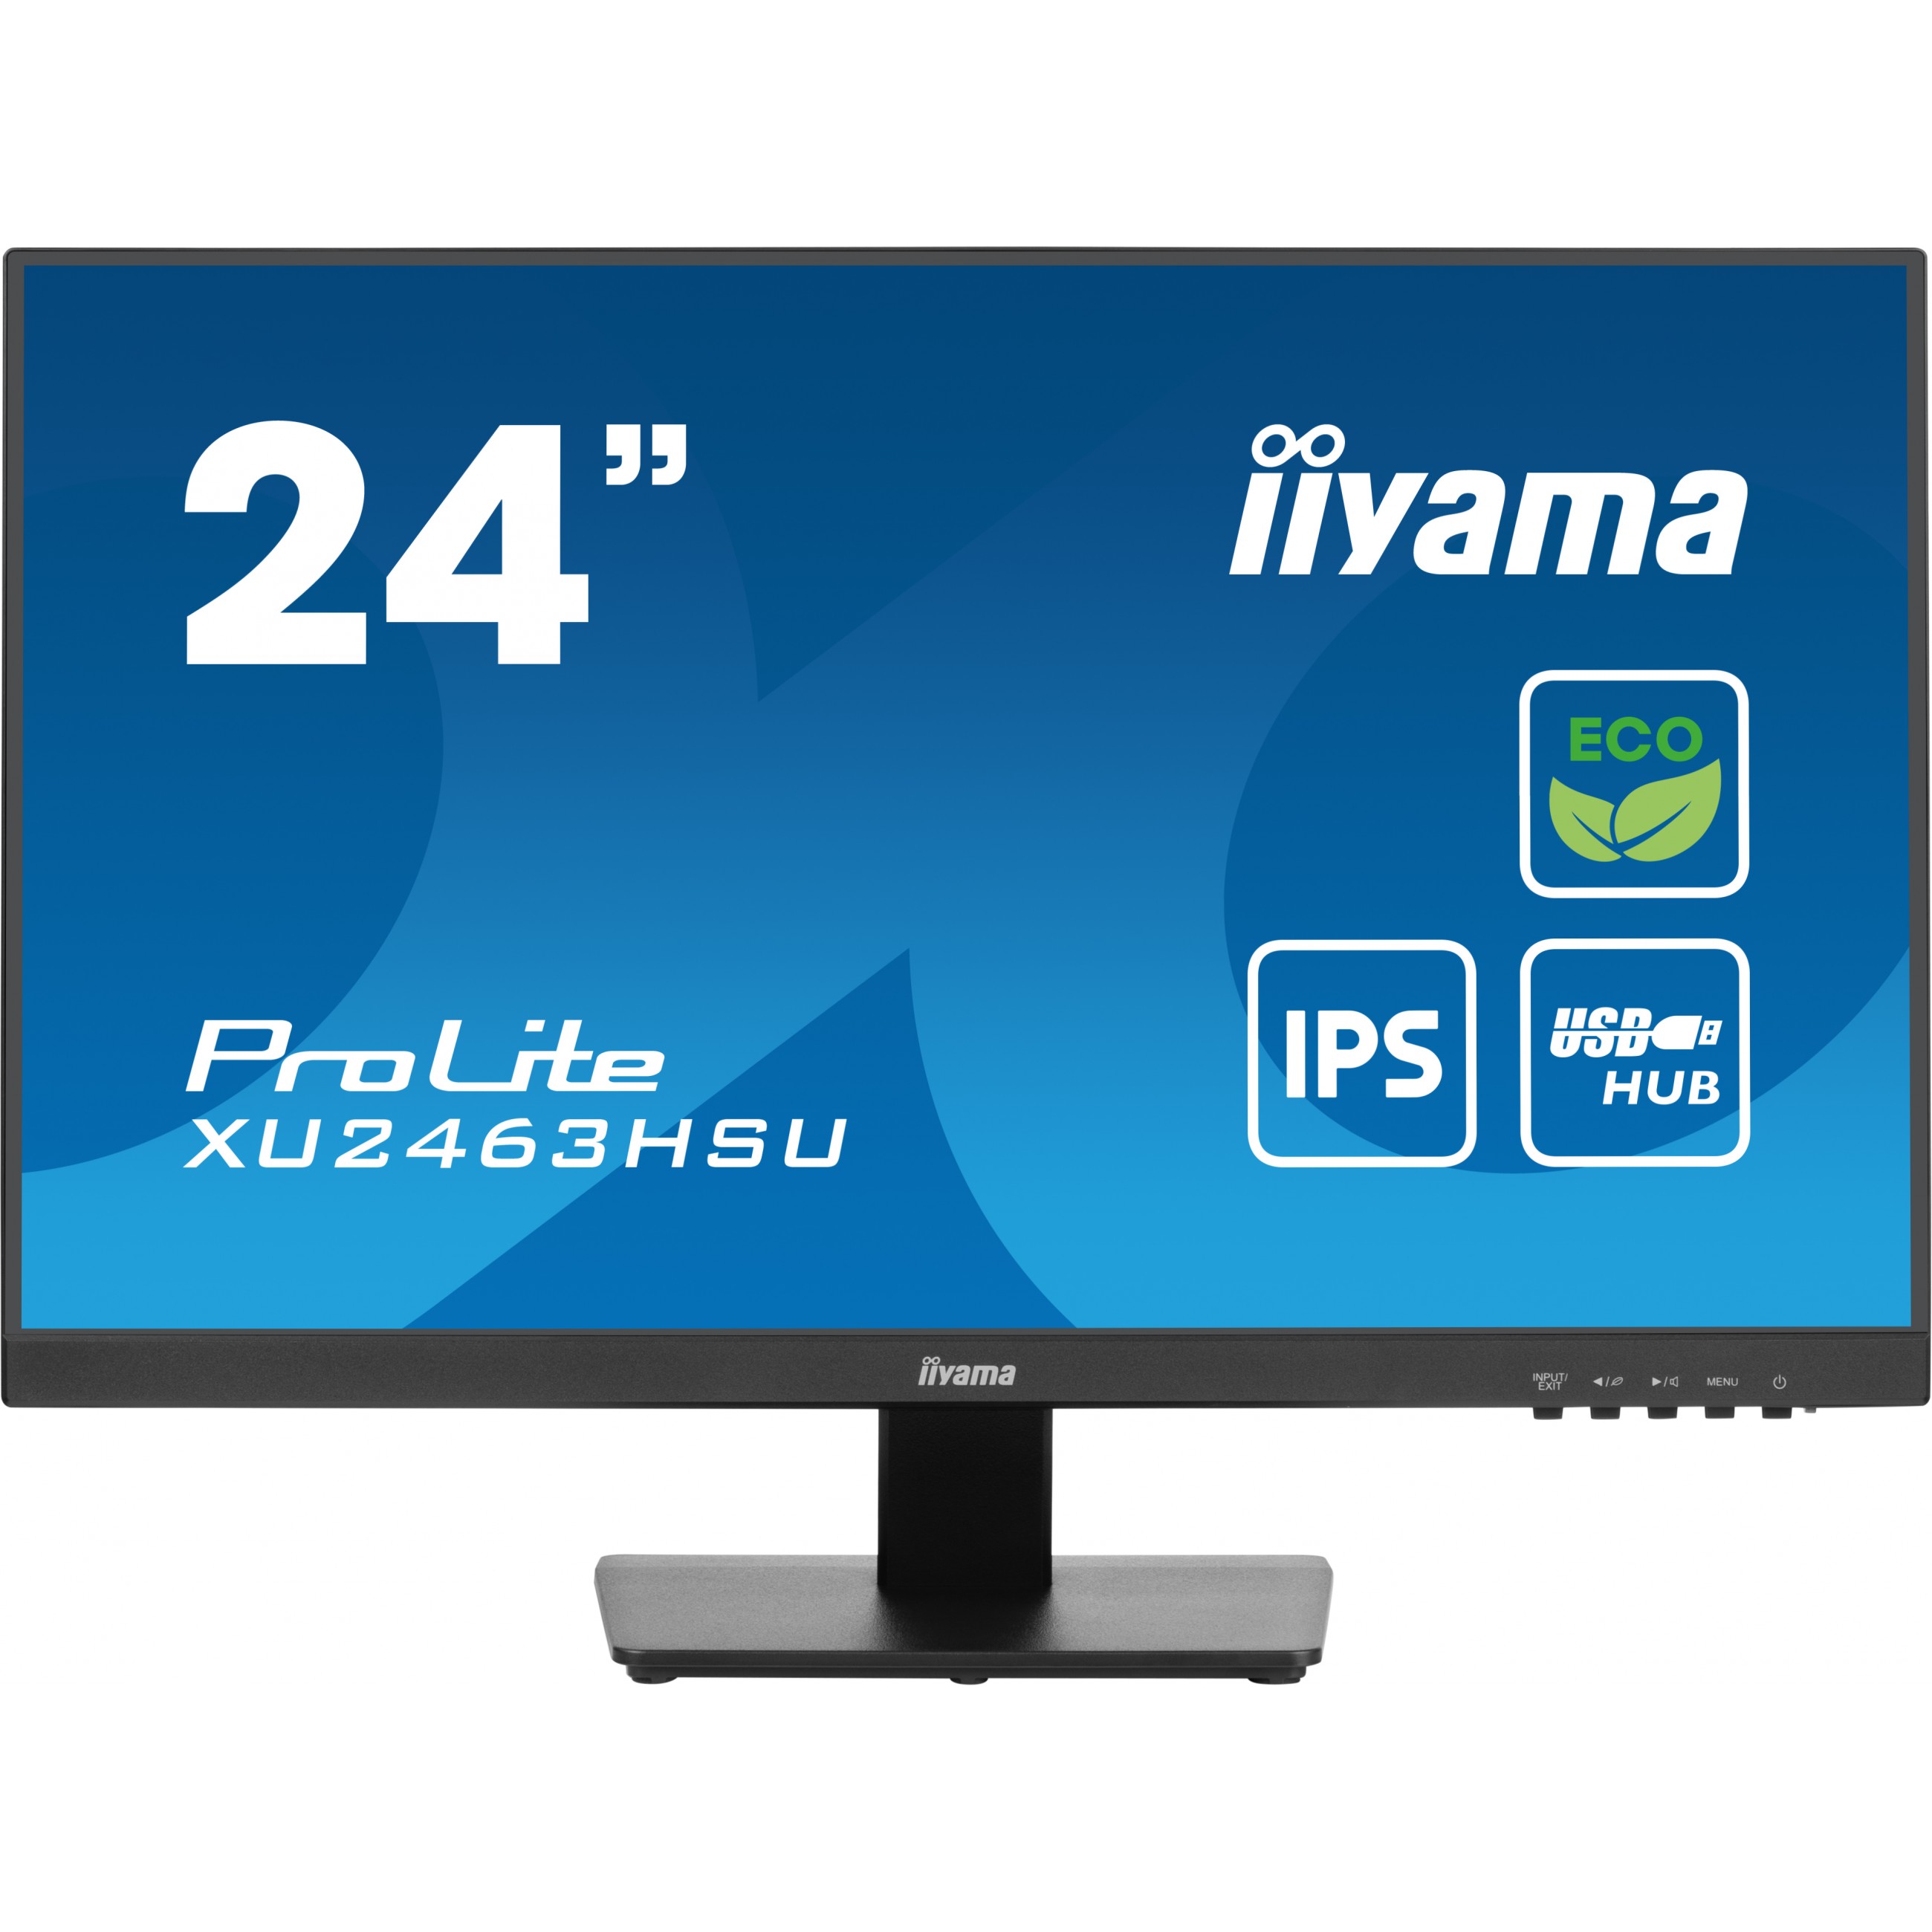 iiyama ProLite XU2463HSU-B1 computer monitor